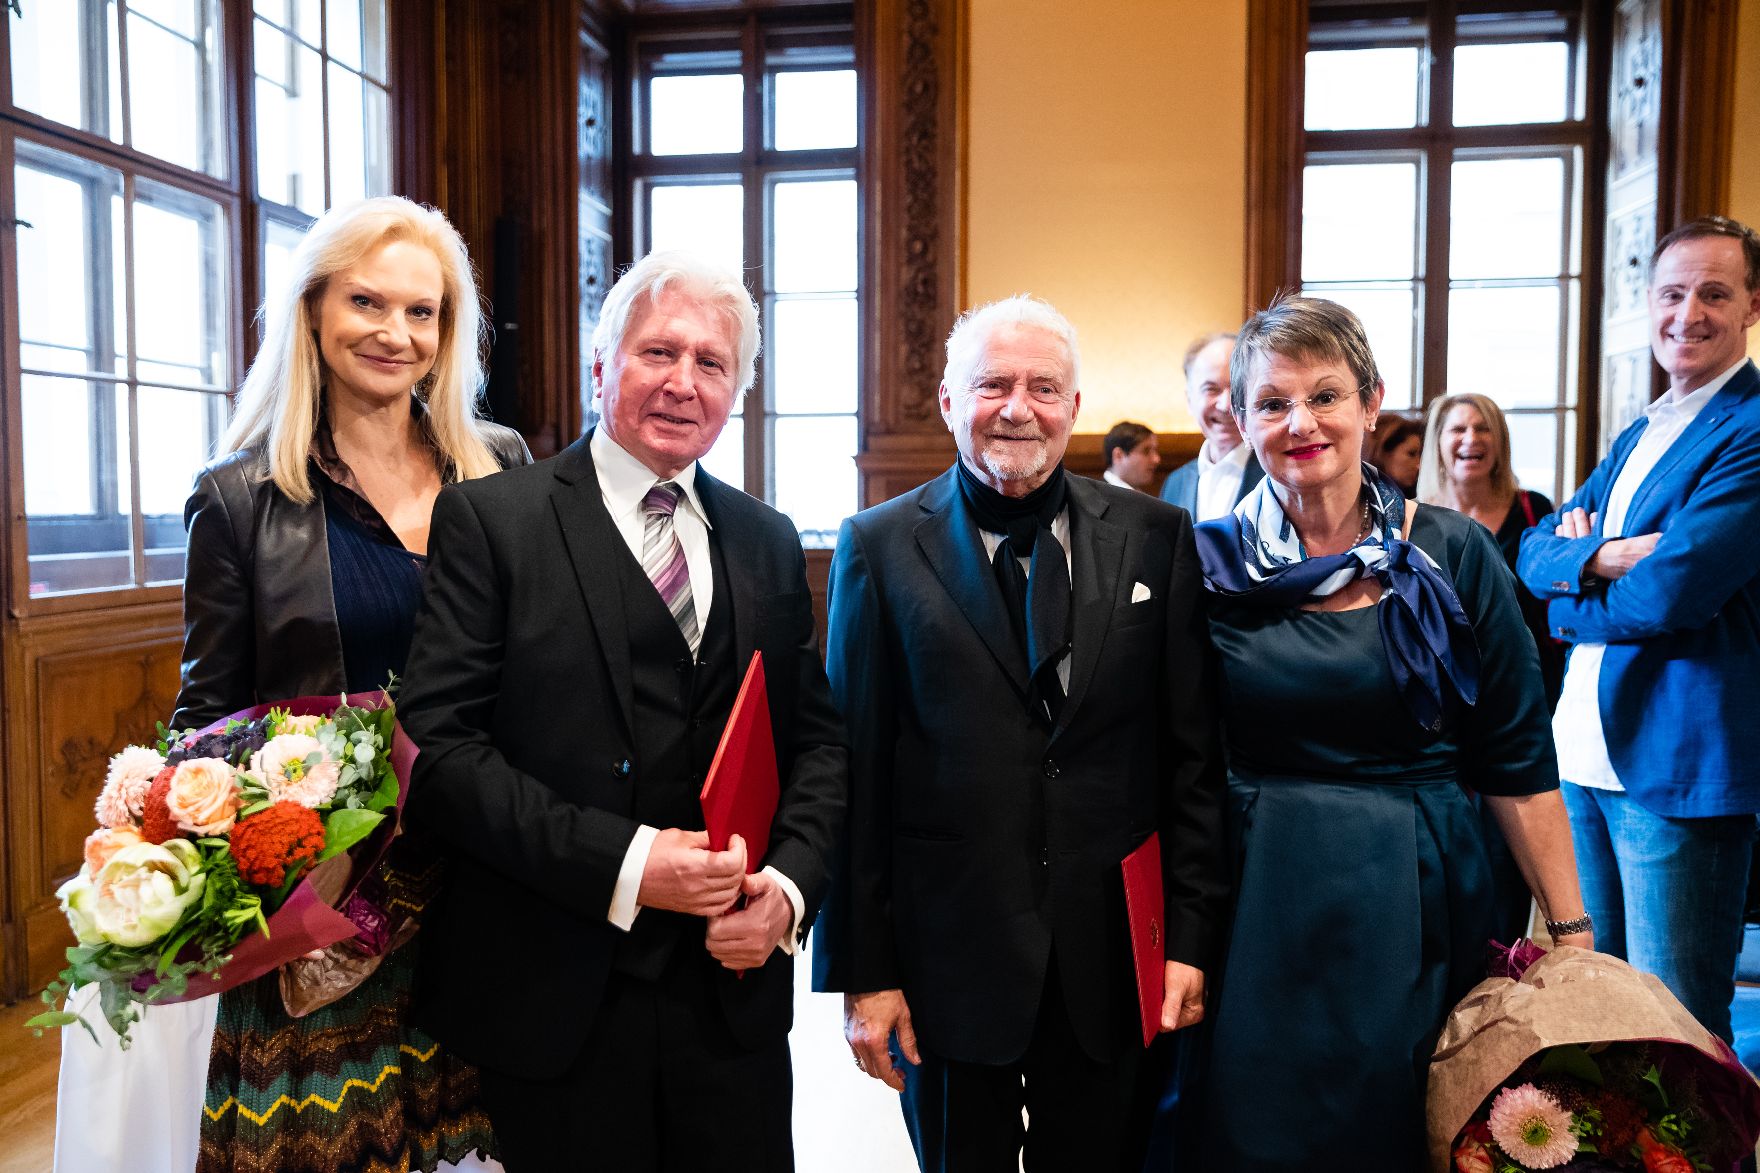 Am 22. November 2019 überreichte Sektionschef Jürgen Meindl das Goldene Ehrenzeichen für Verdienste um die Republik Österreich an Erich Martin Wolf (m.r.) und die Urkunde, mit der Wolfgang Klivana (m.l.) der Berufstitel Professor verliehen wurde.